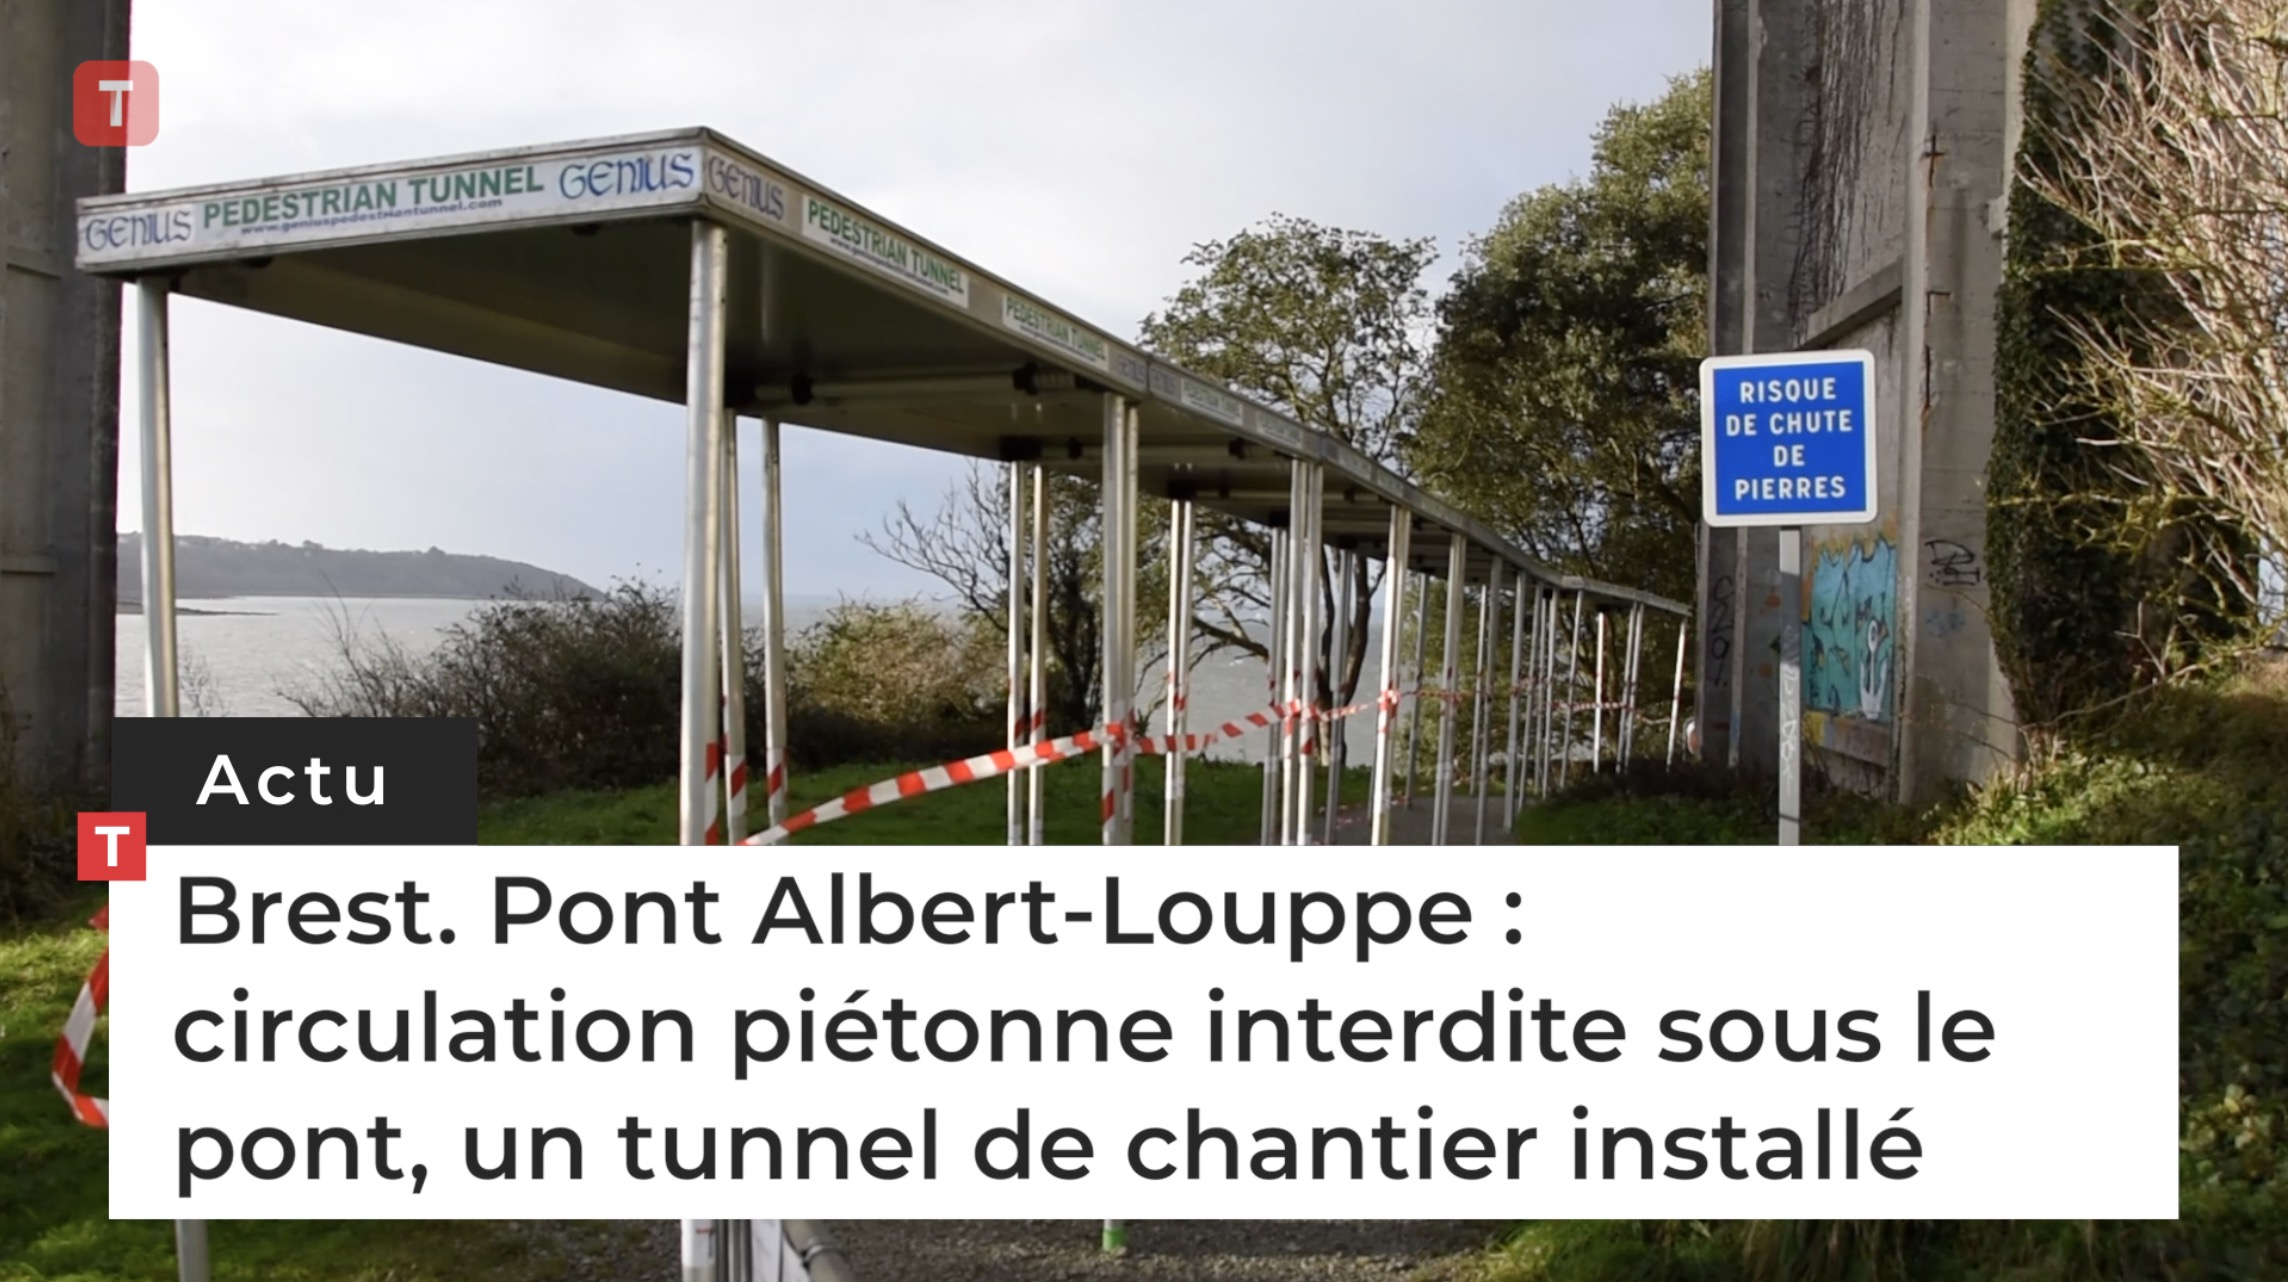 Brest. Pont Albert-Louppe : circulation piétonne interdite sous le pont, un tunnel de chantier installé (Le Télégramme)